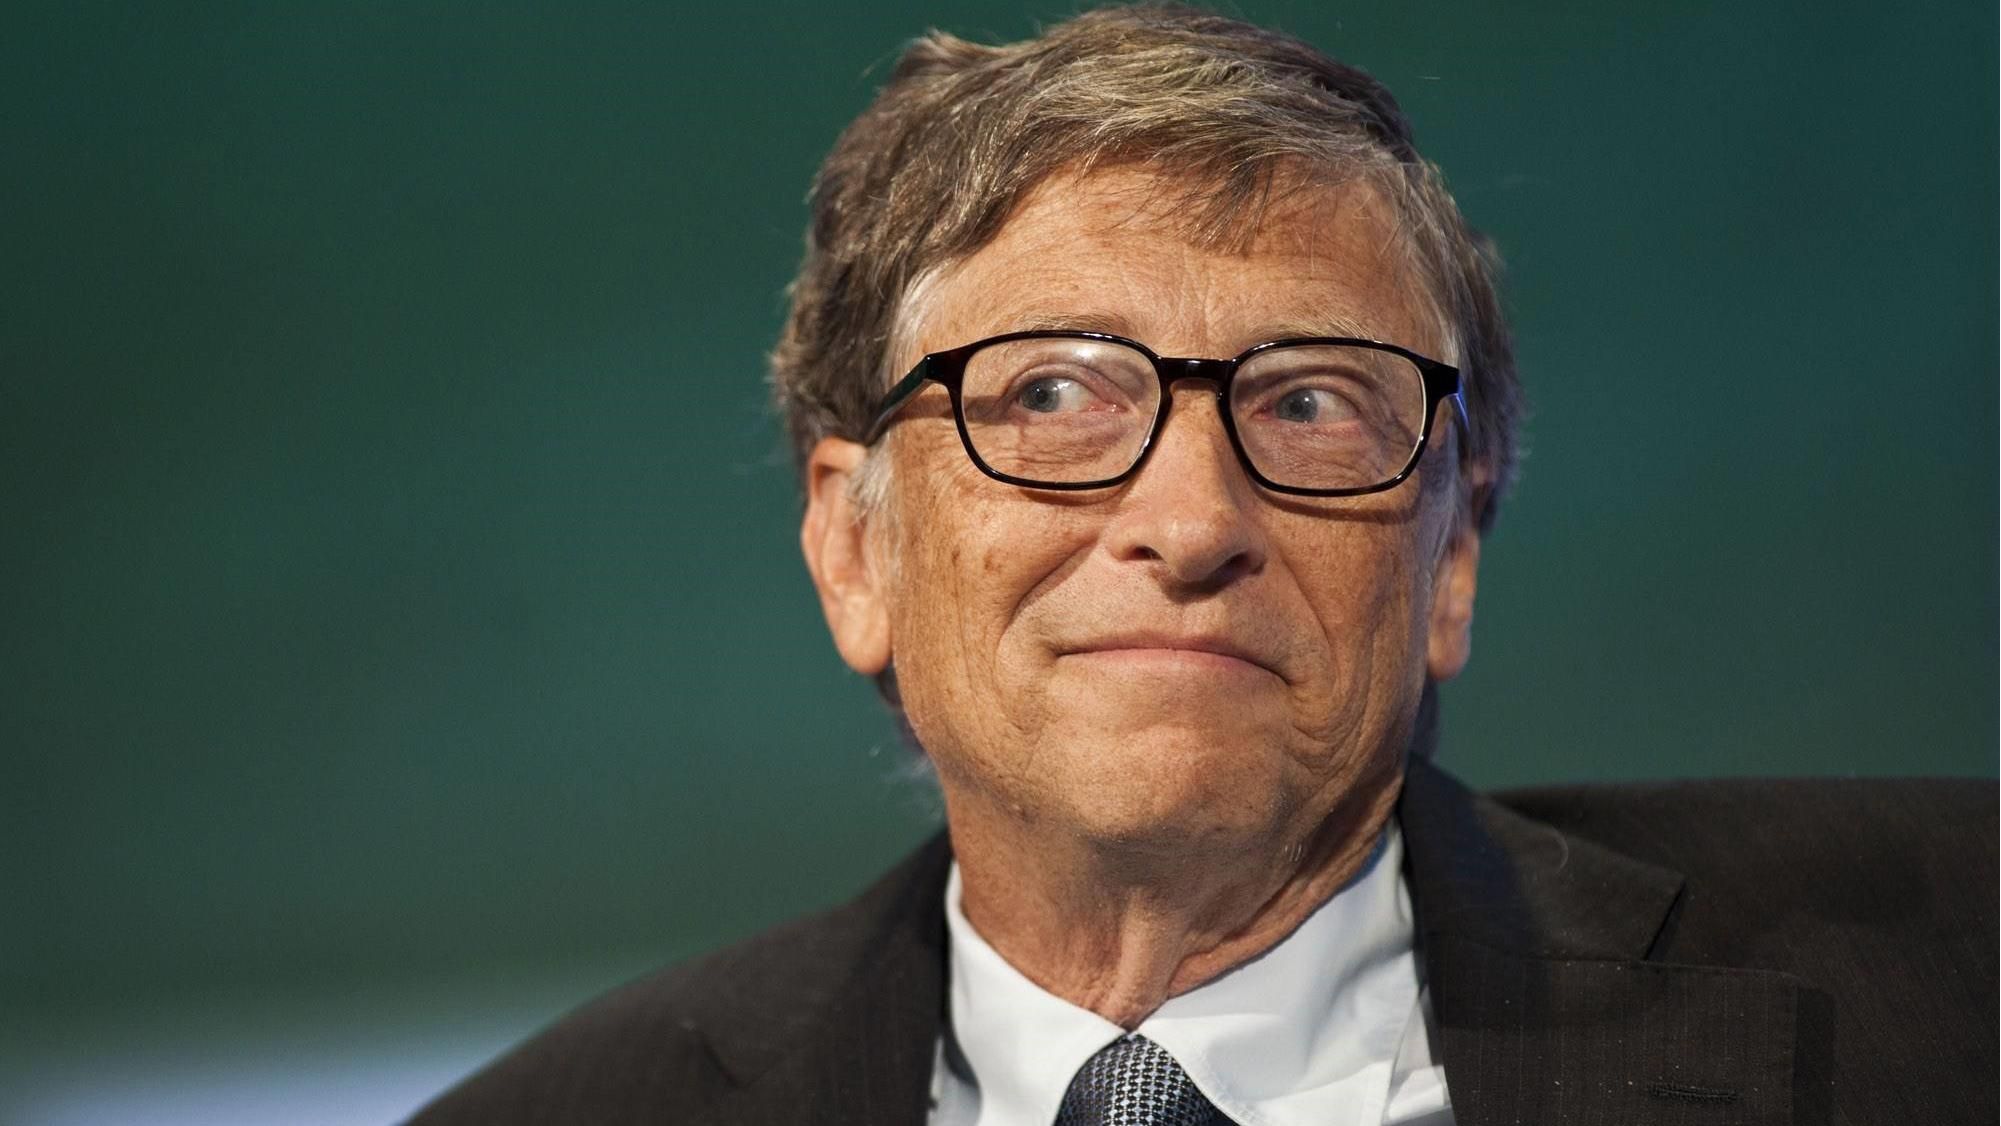 Білл Гейтс запускає власний подкаст: про що, коли прем'єра